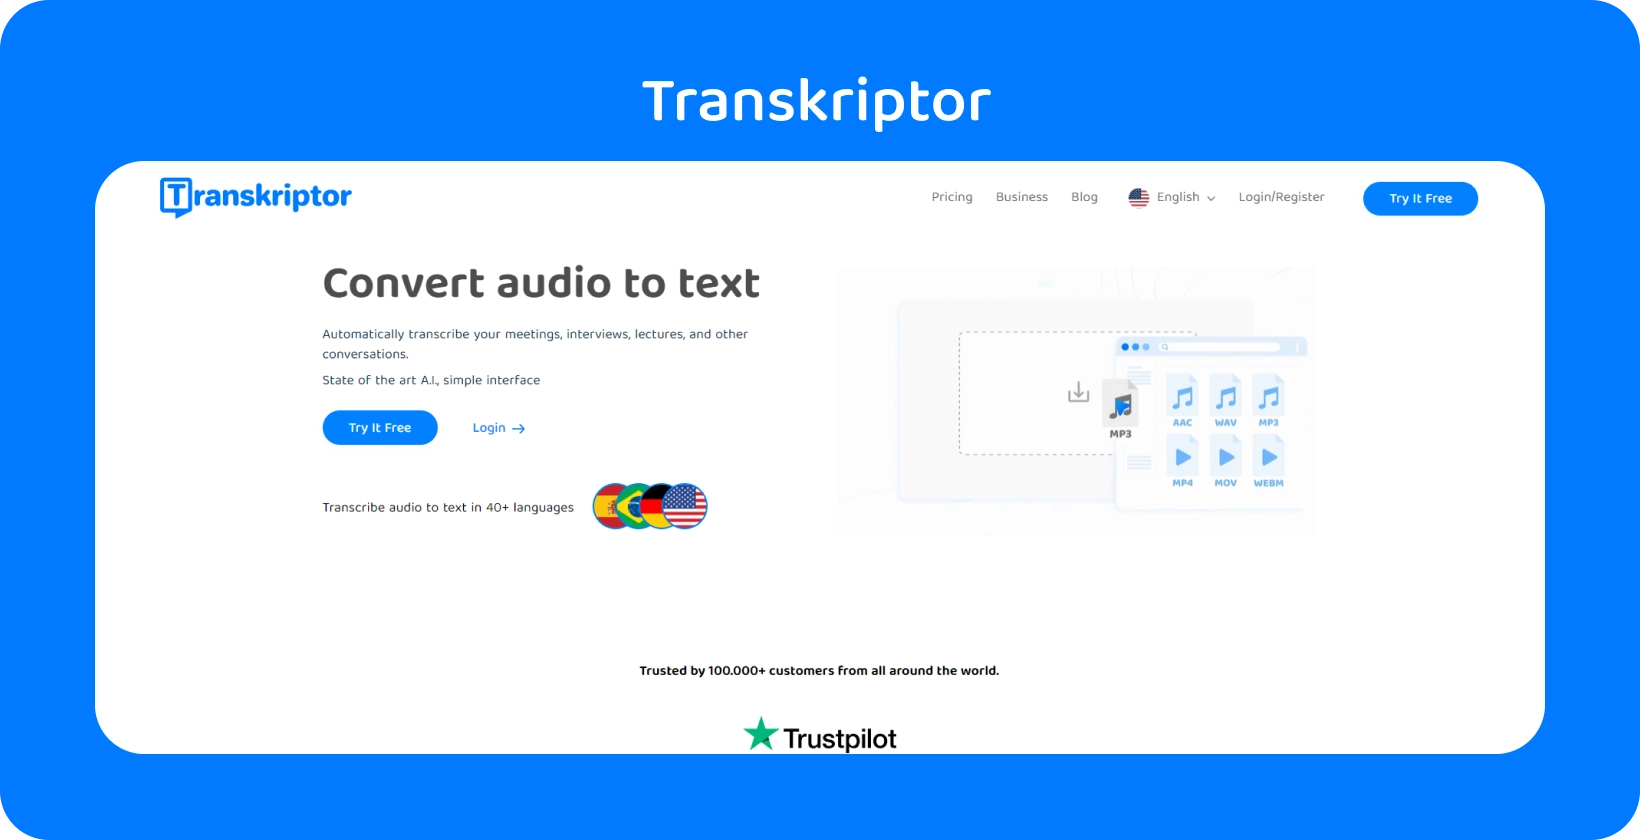 Snímek obrazovky rozhraní přepisovacího softwaru "Transkriptor" zobrazující přepis dialogu.